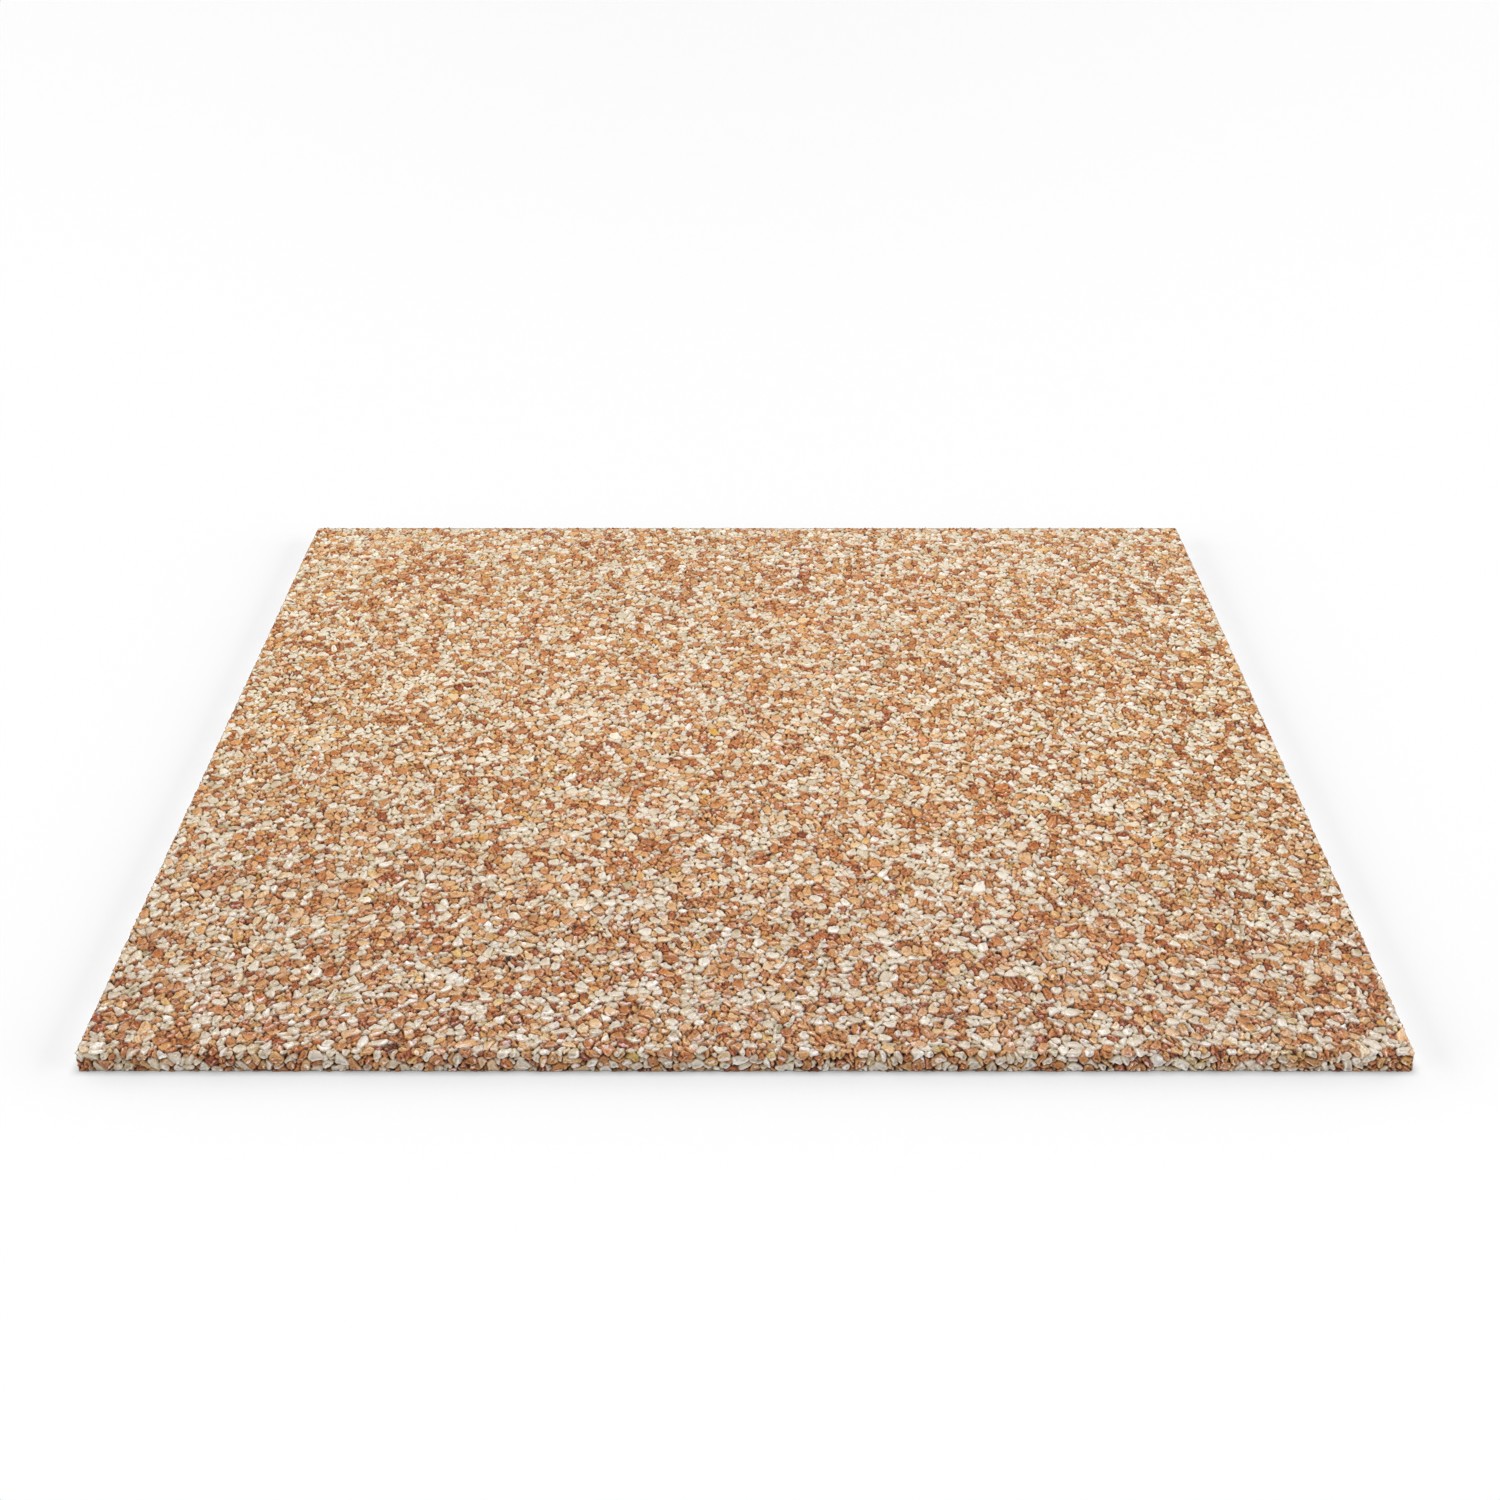 Steinteppich Fliese Marmor New Classic mit den Maßen 50 cm x 50 cm x 11 mm. Der Steinteppich hat einen orange-beigen Farbton. Die Steinteppich Fliese sieht man in der frontalen Ansicht.